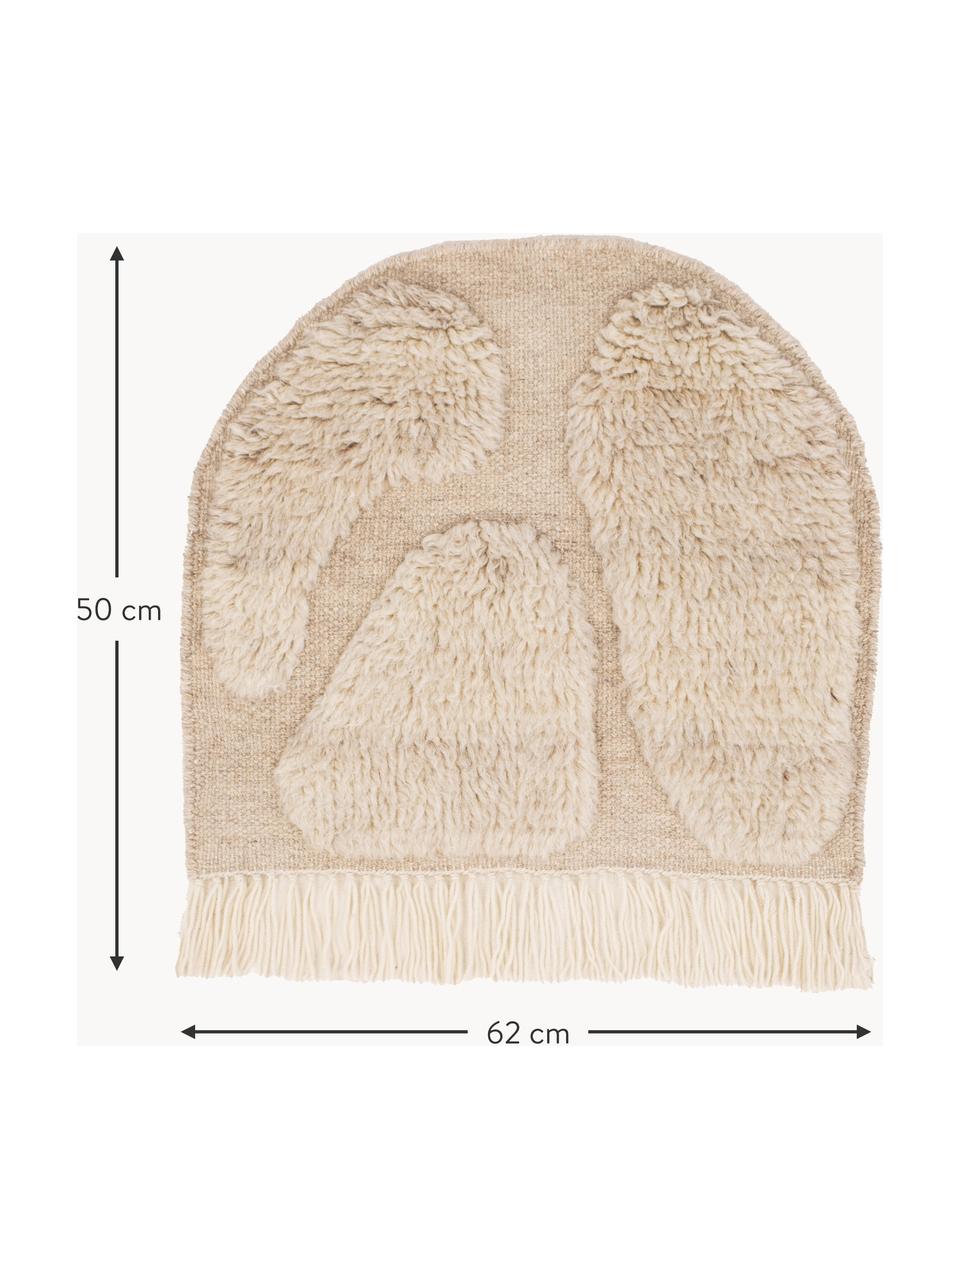 Dekoracja ścienna z wełny z frędzlami Jakobsö, 100% wełna

Włókna dywanów wełnianych mogą nieznacznie rozluźniać się w pierwszych tygodniach użytkowania, co ustępuje po pewnym czasie, Beżowy, S 62 x W 50 cm